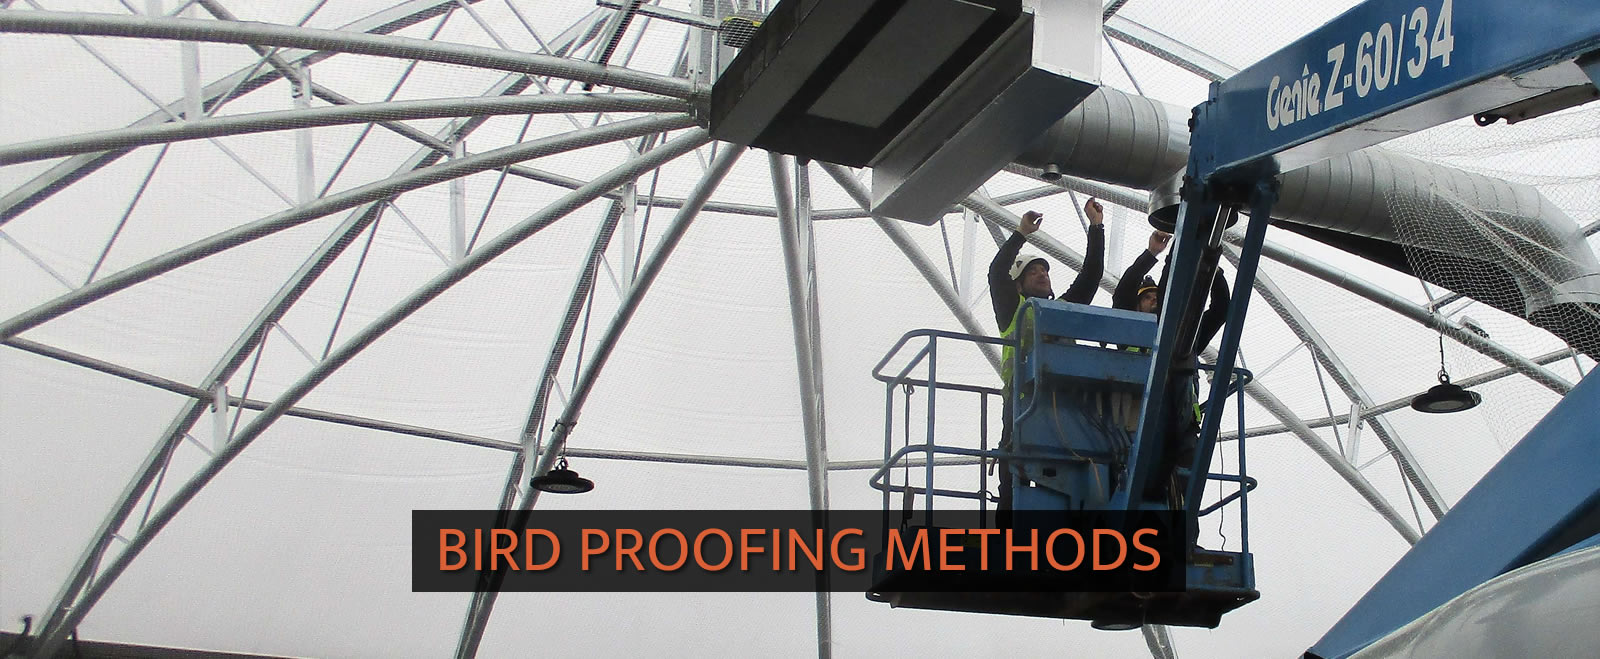 Bird Proofing Methods